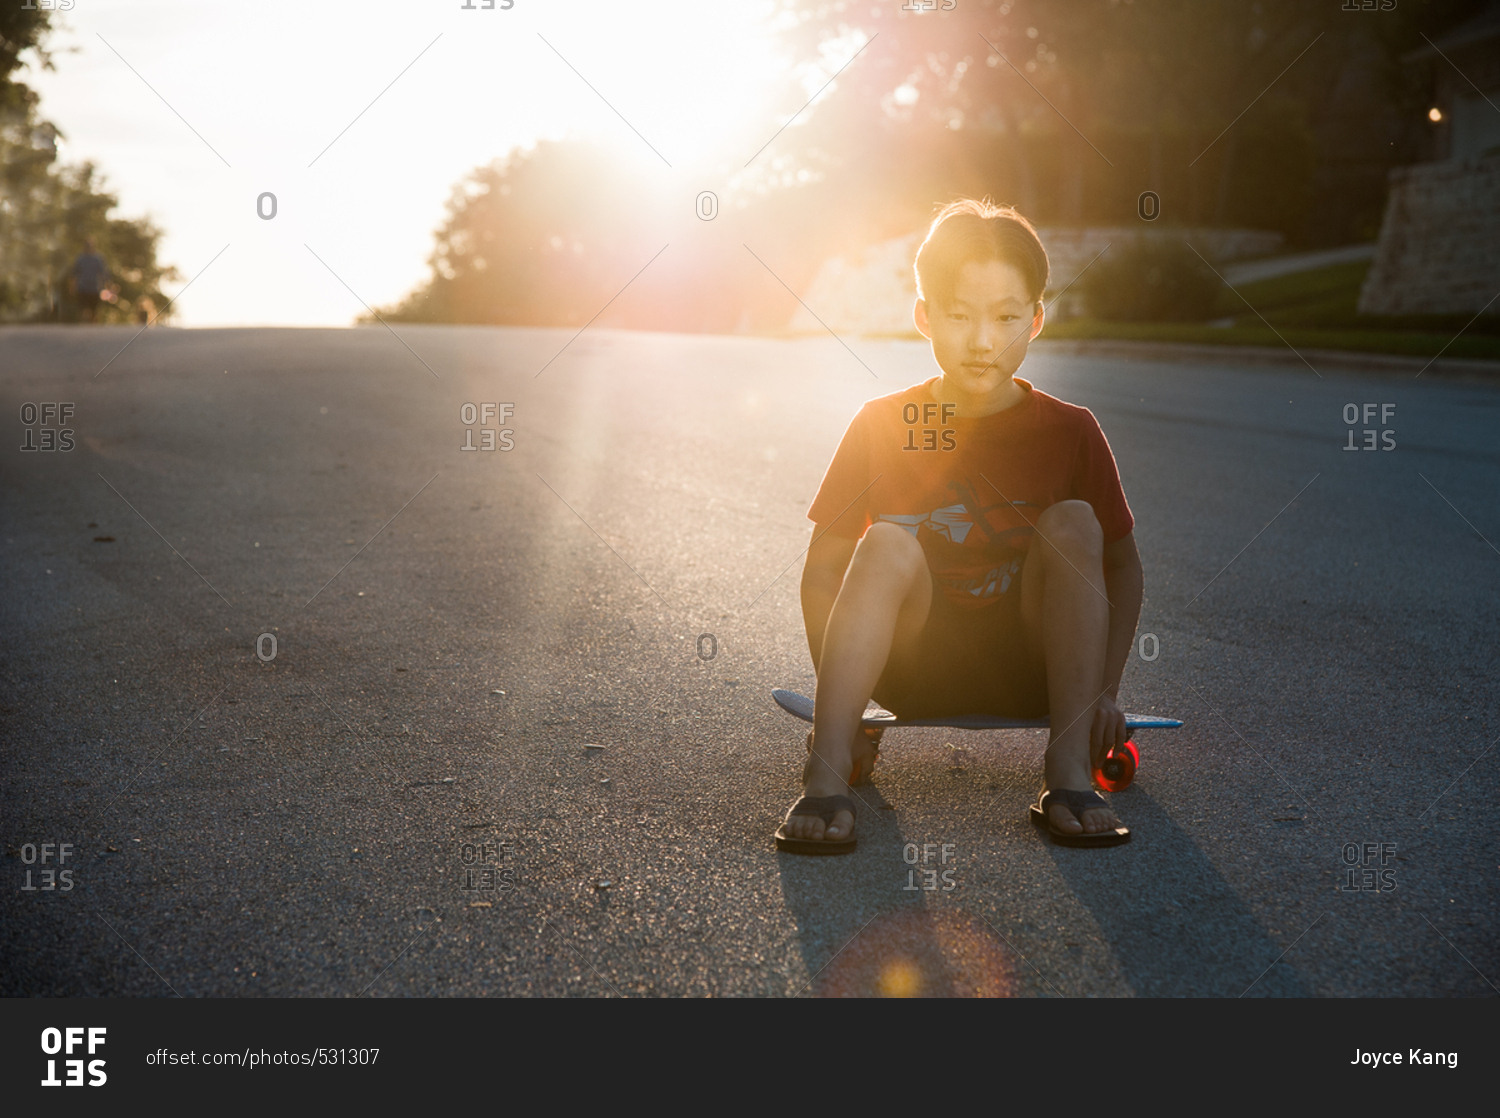 Portrait of an adolescent boy sitting on skateboard in street